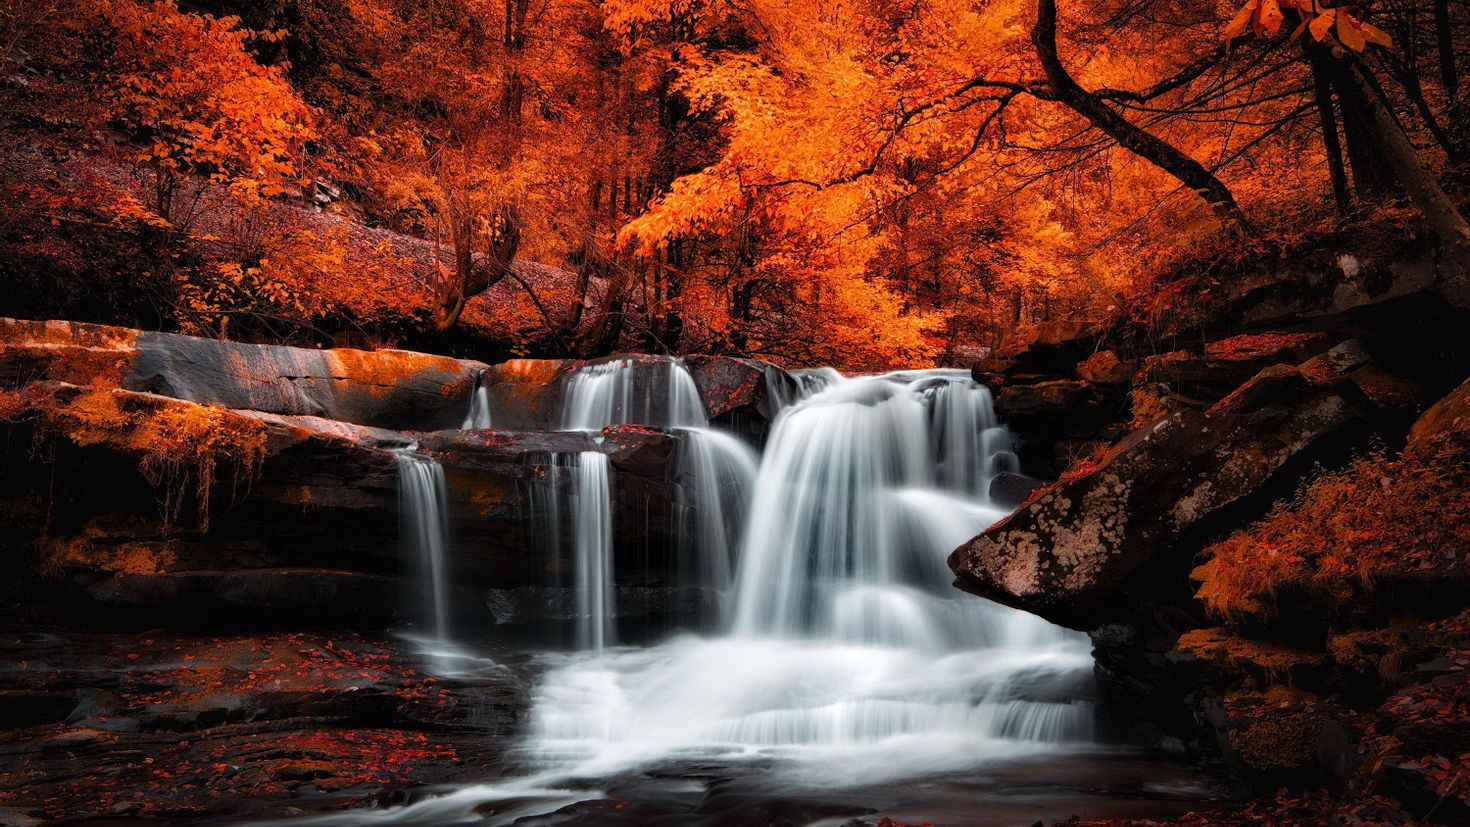 Изображения на рабочий стол компьютера. Природа. Красивая природа. Красивые пейзажи с водопадами. Осенний водопад.